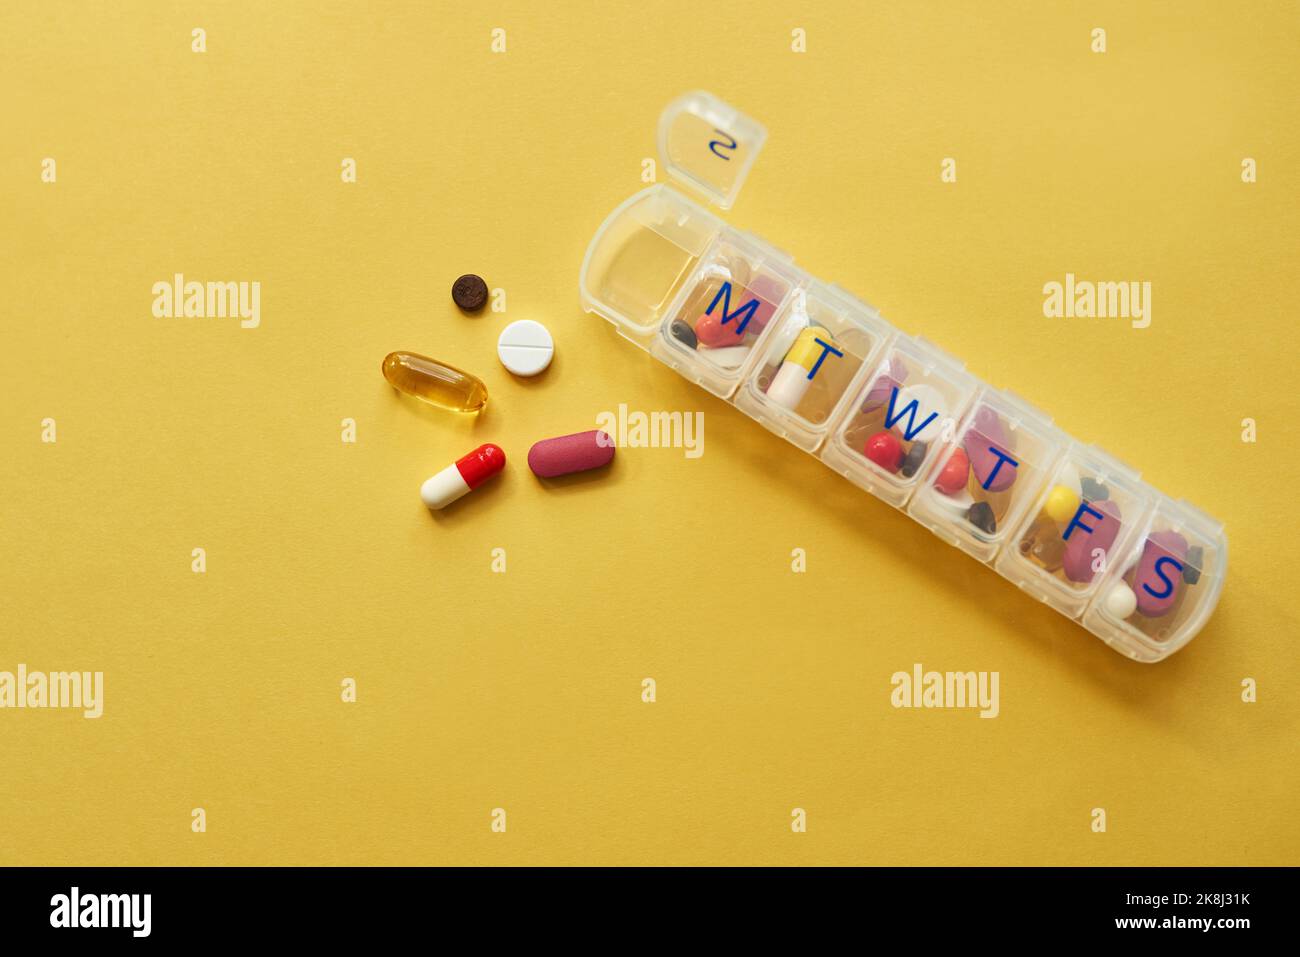 Le bon dosage fait une grande différence. Studio shot de comprimés dans un coffret de médicaments sur fond jaune. Banque D'Images